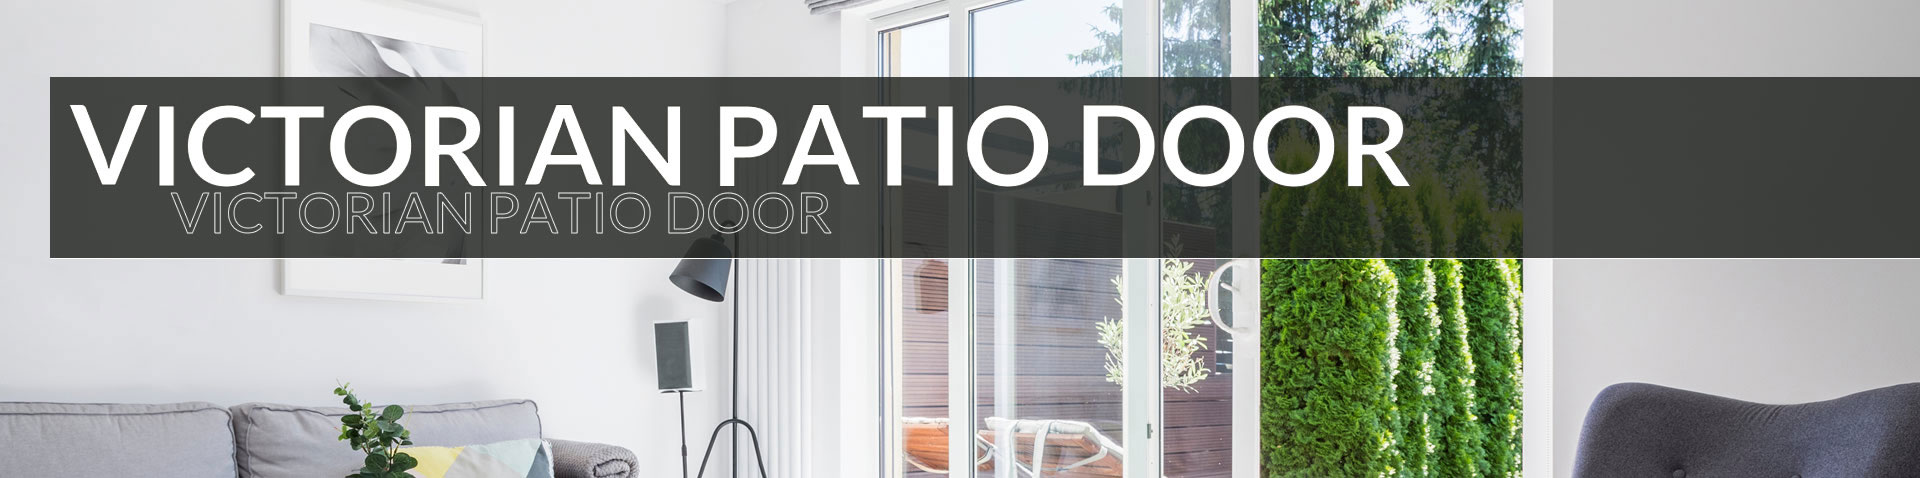 Victorian Patio Doors - Turkstra Windows & Doors